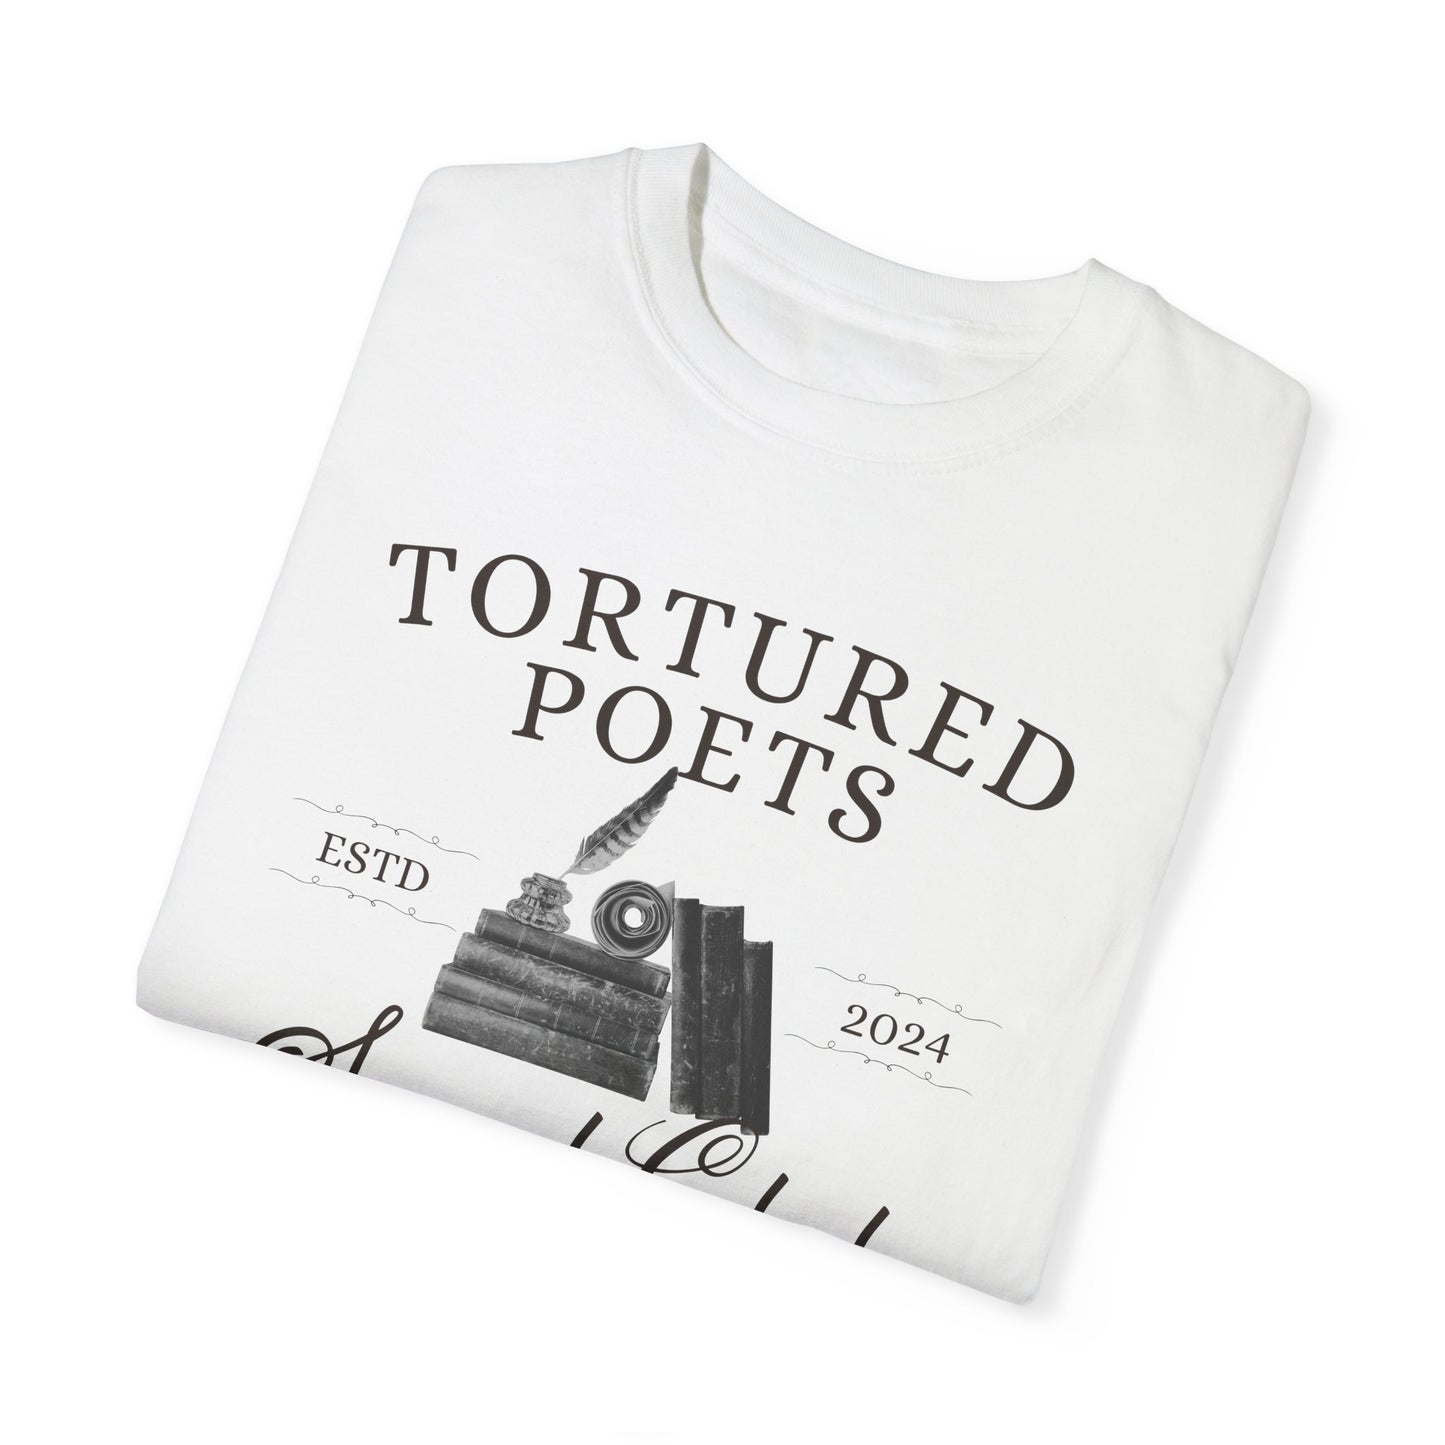 Tortured Poets Social Club T-shirt